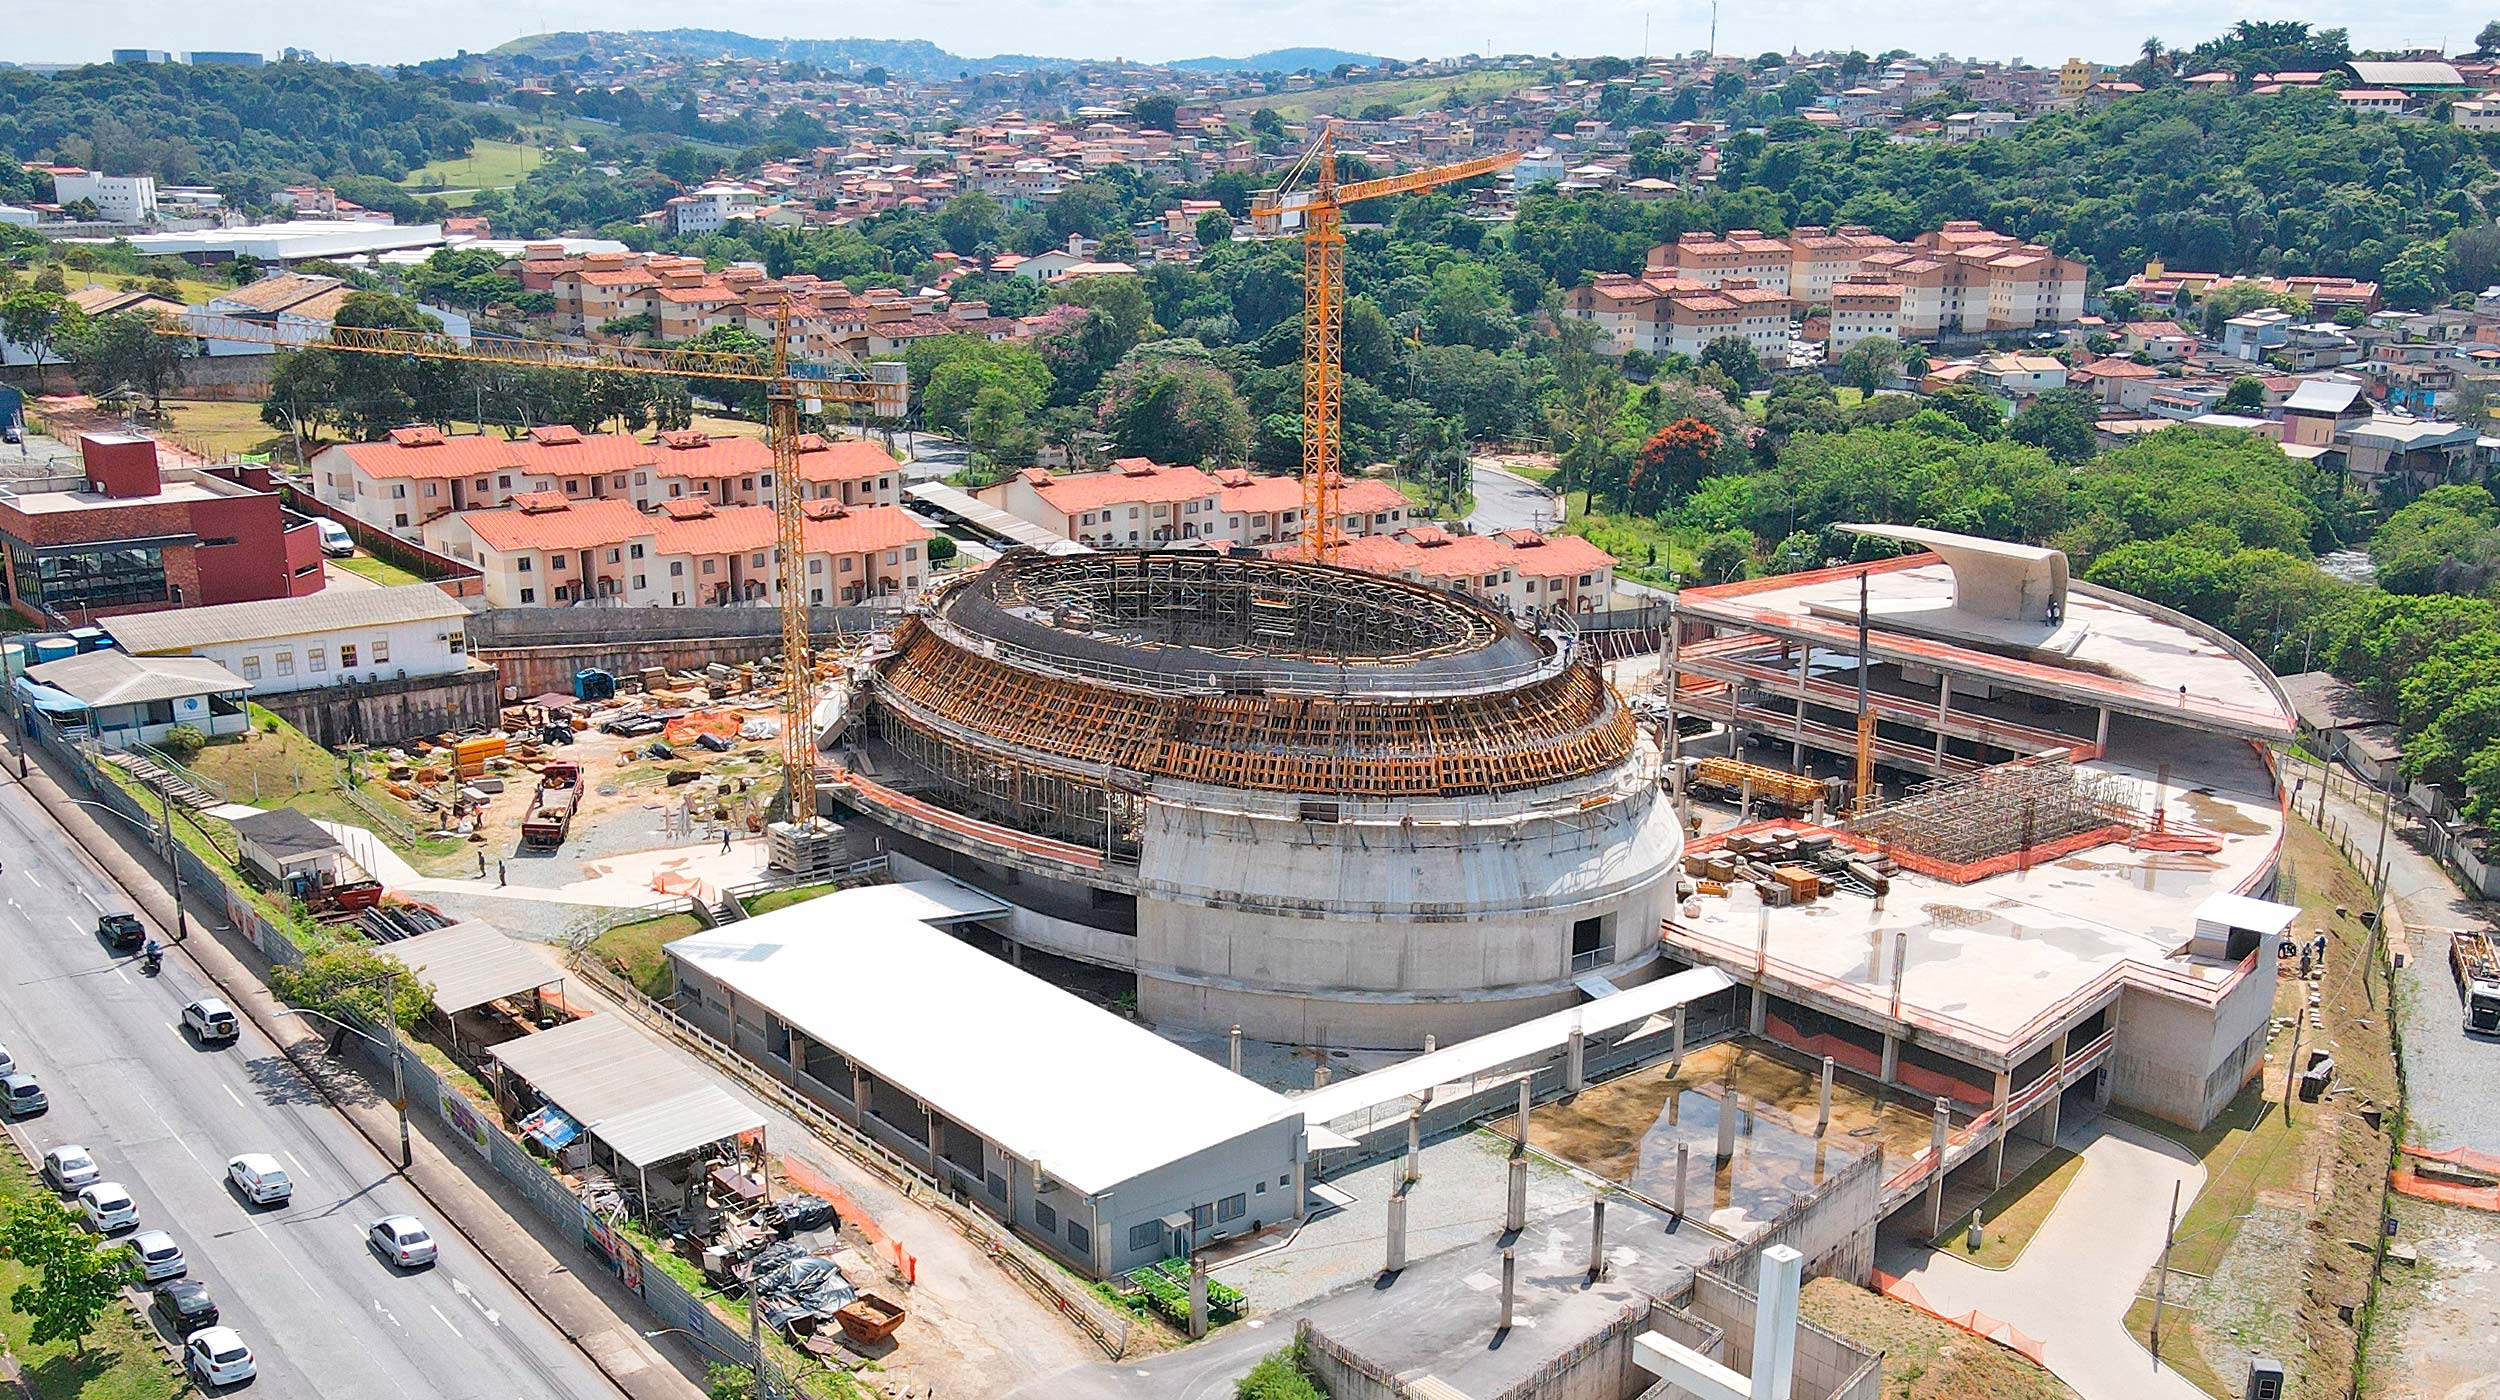 La 'Catedral Cristo Rei' se está construyendo en Belo Horizonte y, cuando esté terminada, será la nueva sede de la Iglesia Católica en la ciudad. El proyecto, uno de los últimos diseñados por el arquitecto brasileño Oscar Niemeyer entre 2006 y 2010, será un edificio de referencia en la localidad.